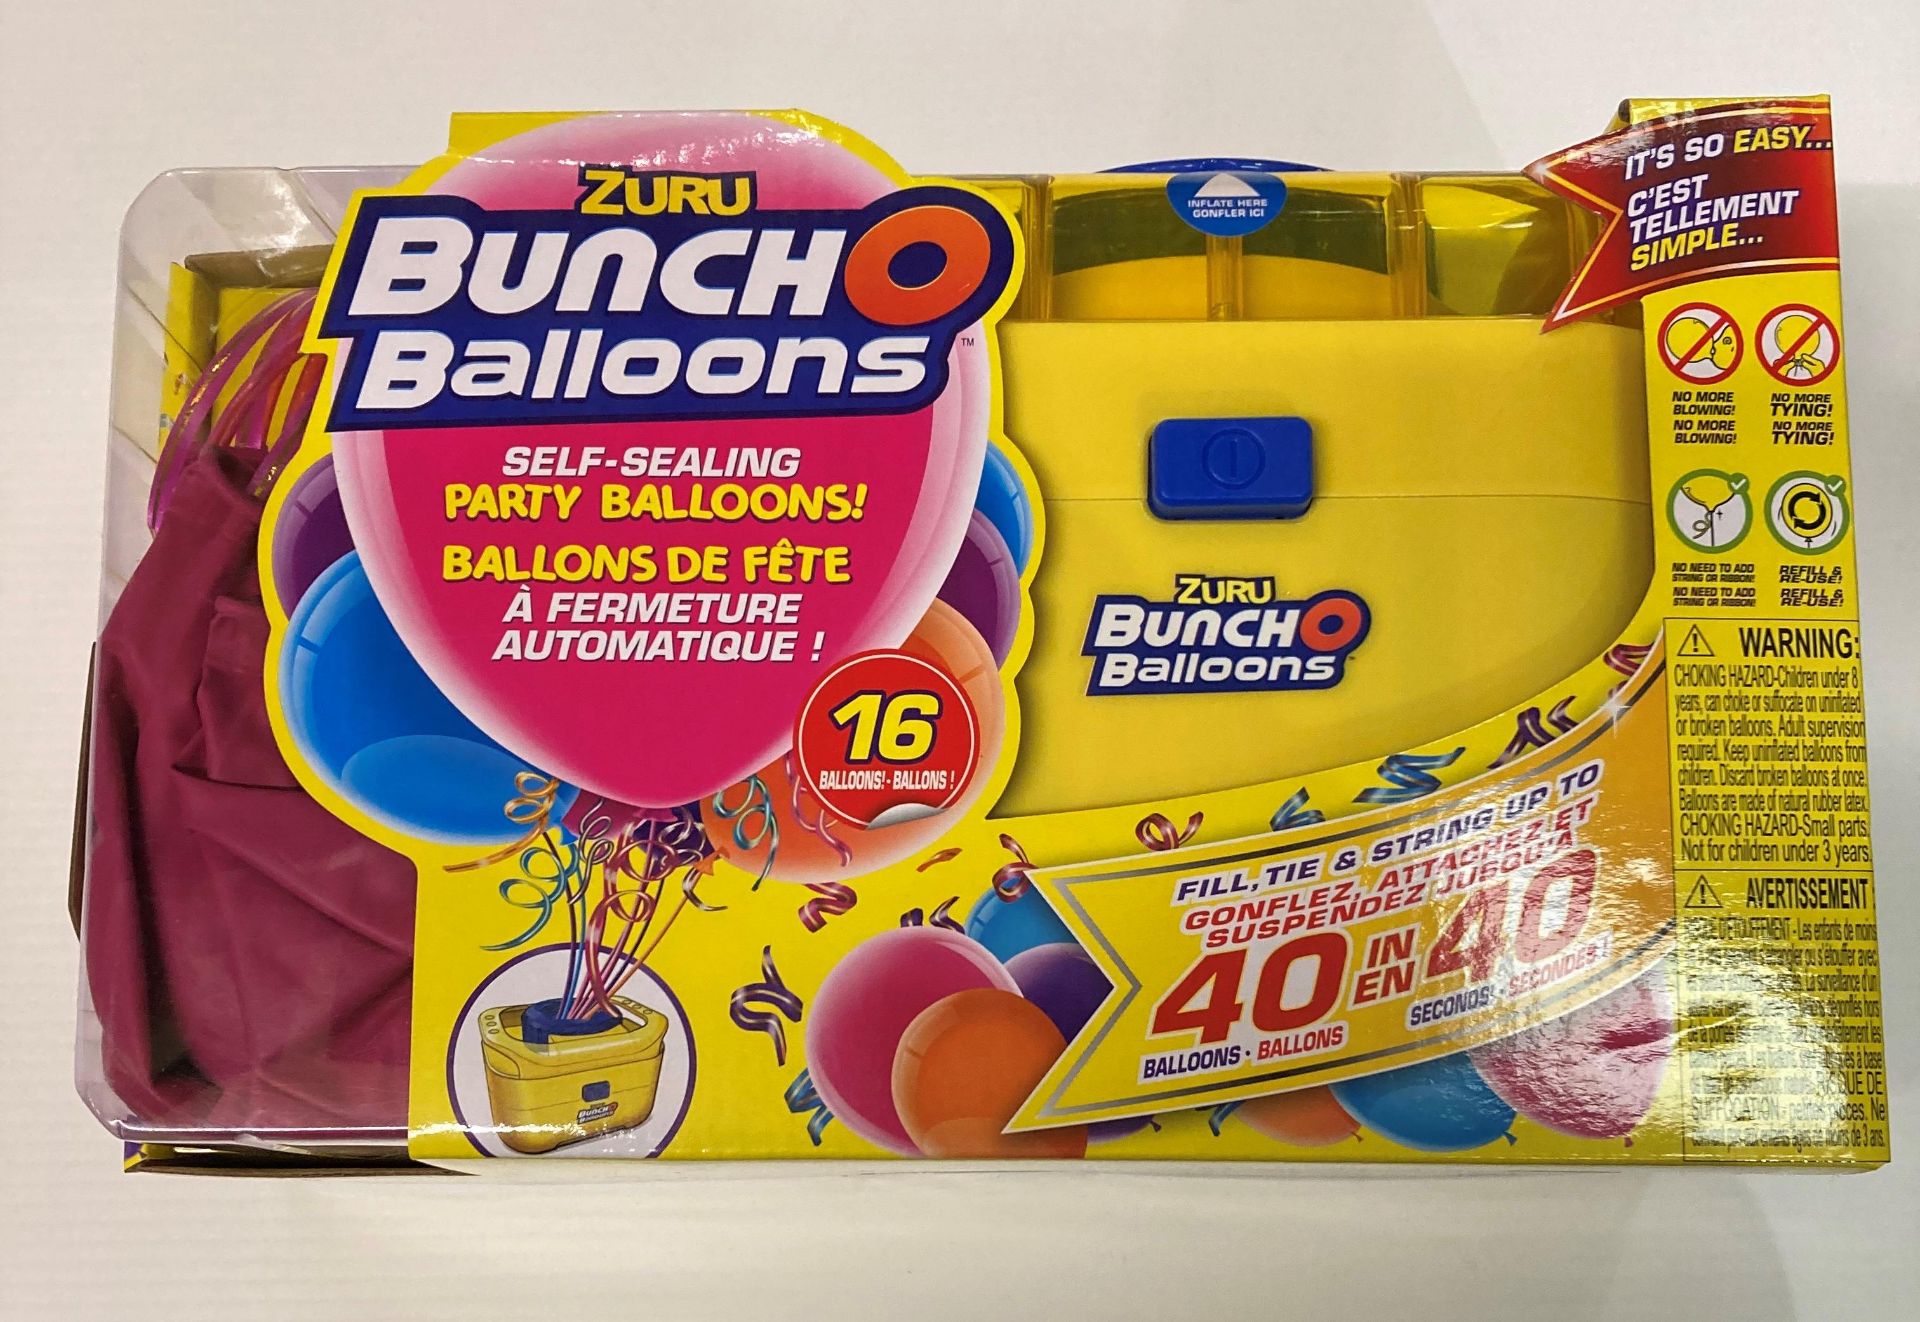 18 x Zuru Bunch O Balloons portable electric party balloon pump each with 16 self sealing balloons